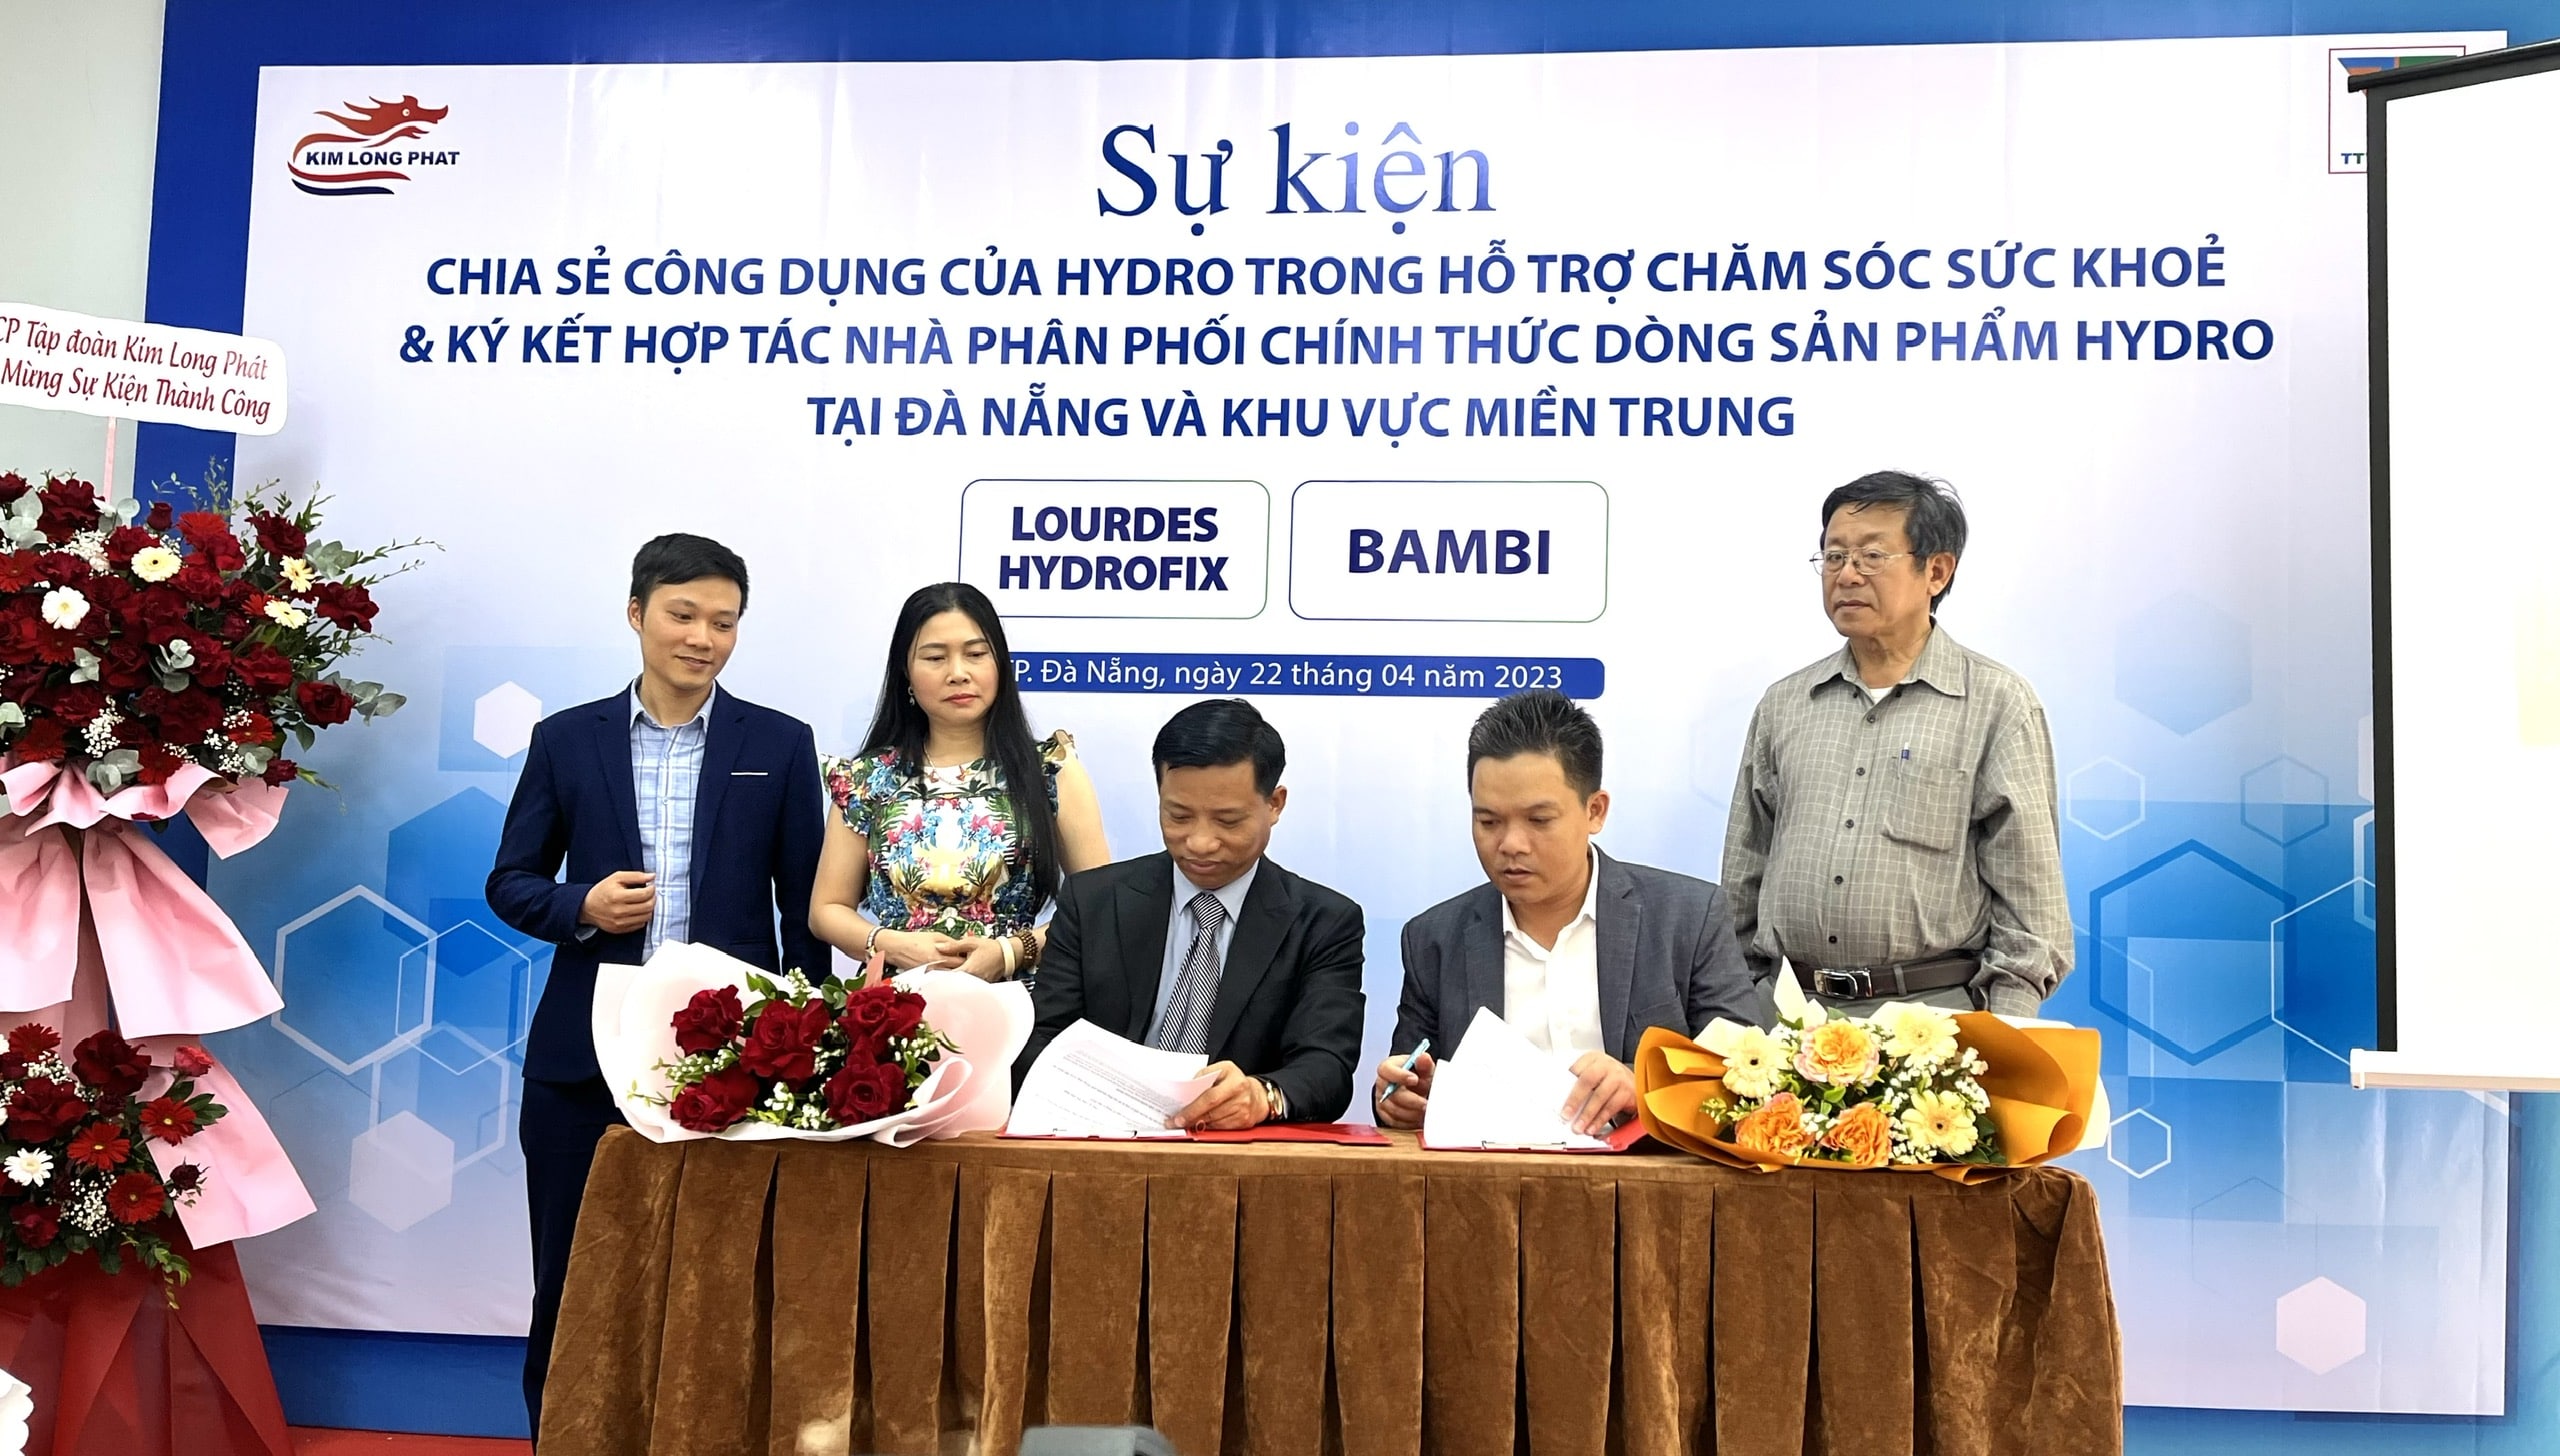 Kim Long Phát tham dự sự kiện: “Chia sẻ công dụng của Hydro trong hỗ trợ chăm sóc sức khỏe & ký kết hợp tác nhà phân phối chính thức dòng sản phẩm Hydro tại Đà Nẵng và khu vực miền Trung”